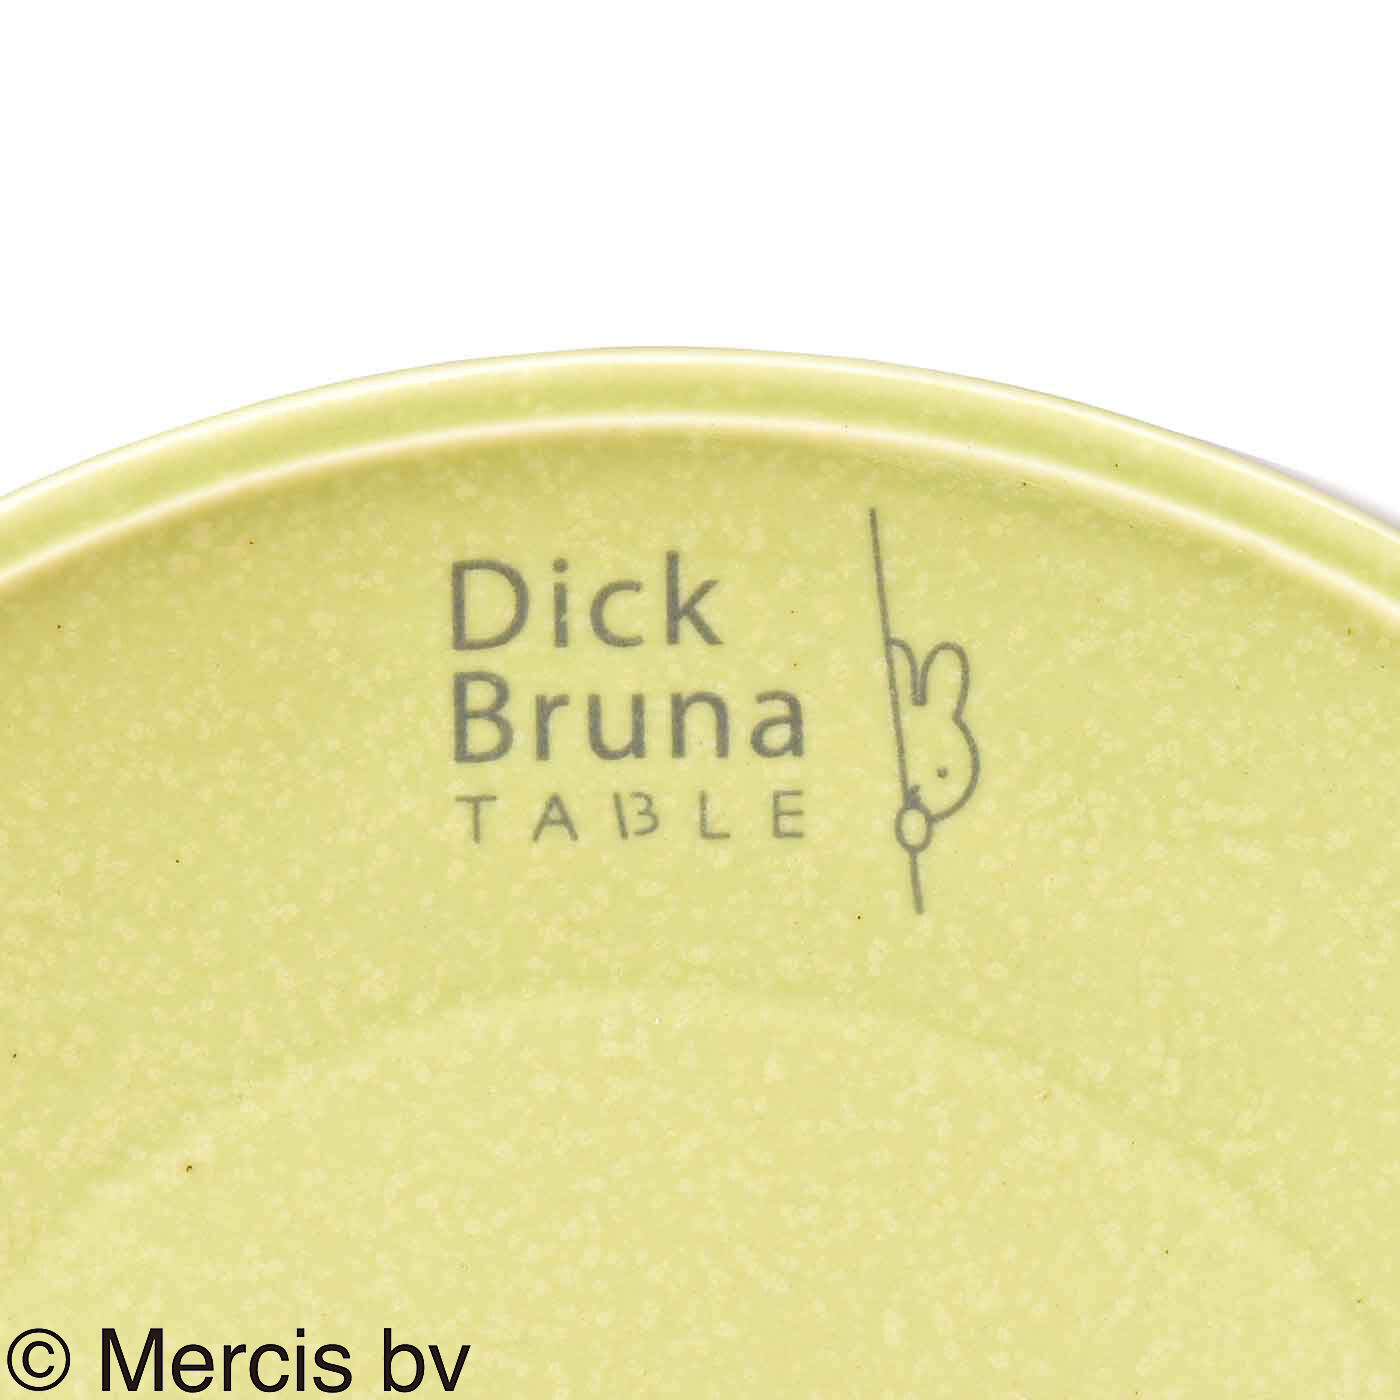 ディック・ブルーナ テーブル|Dick Bruna TABLE  テーブルを華やかに彩るプレート〈Ｓ〉|ロゴが入っています